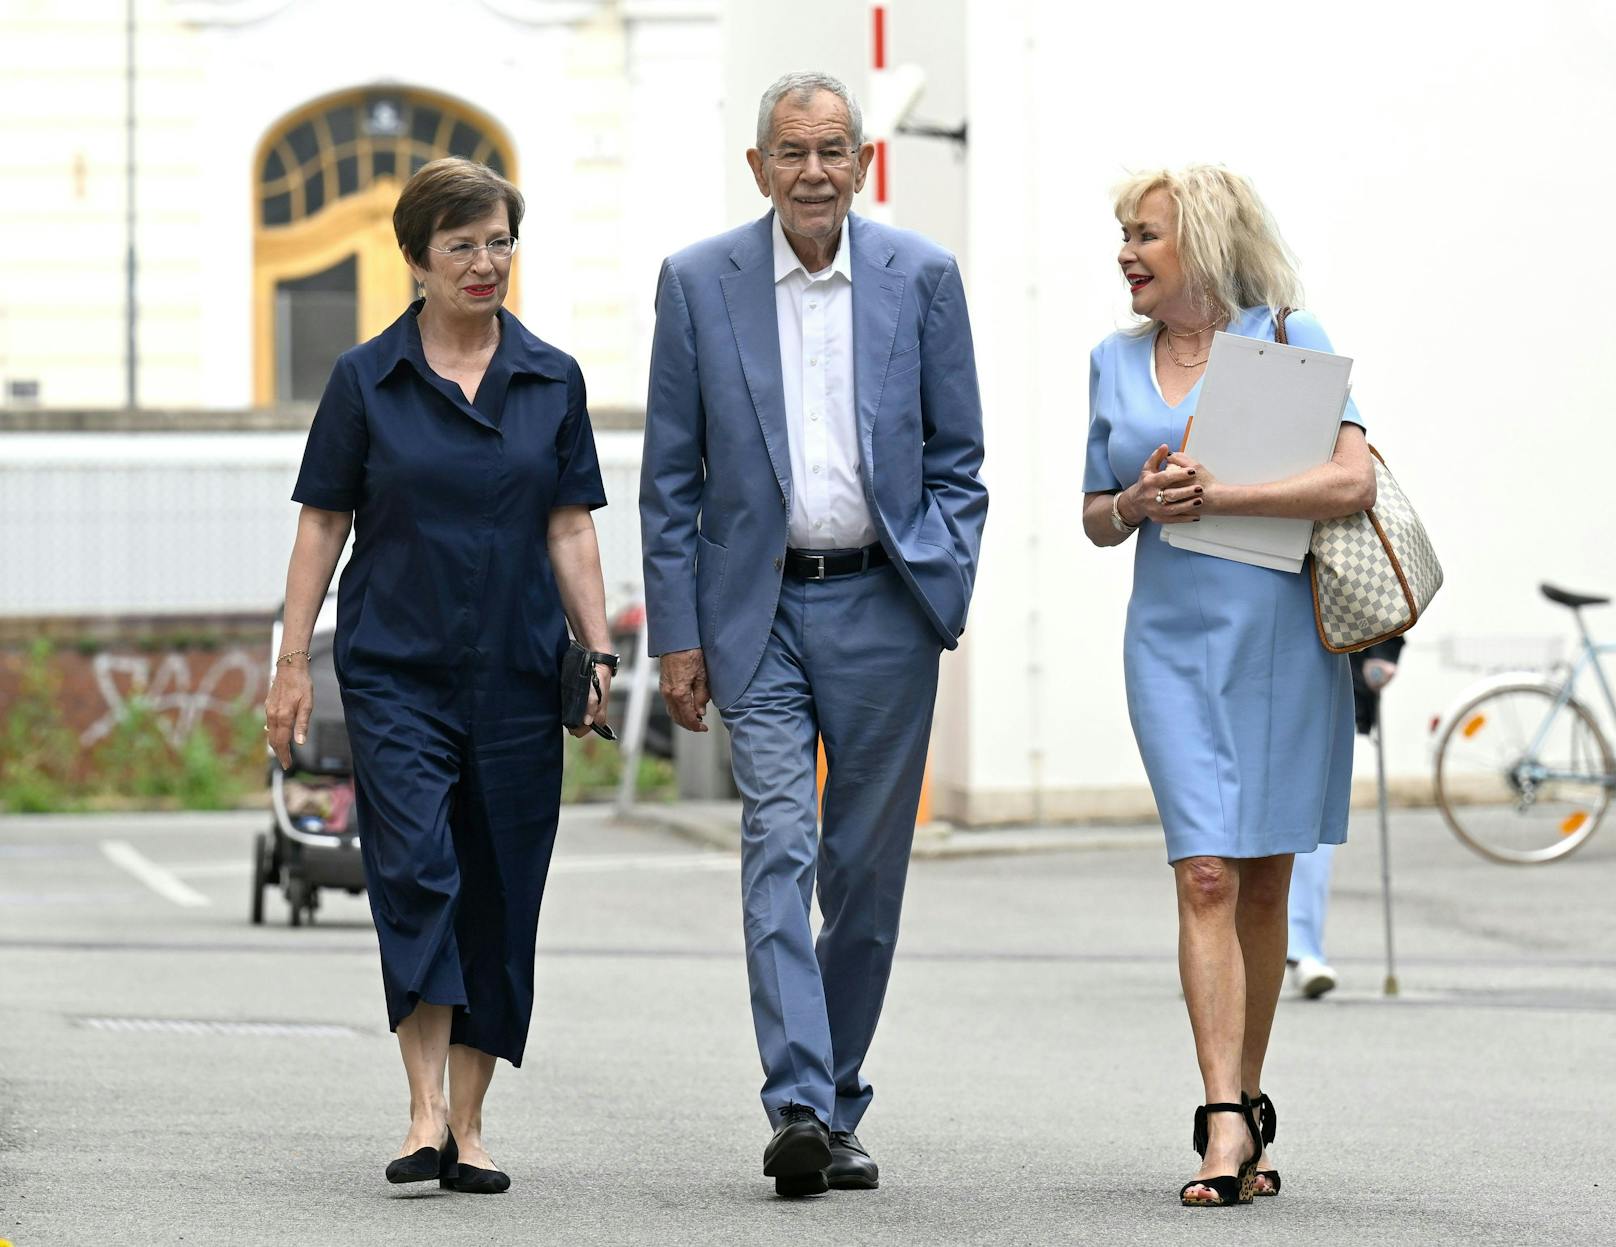 Bundespräsident Alexander Van der Bellen und seine Ehefrau Doris Schmidauer auf dem Weg zum Wahllokal.